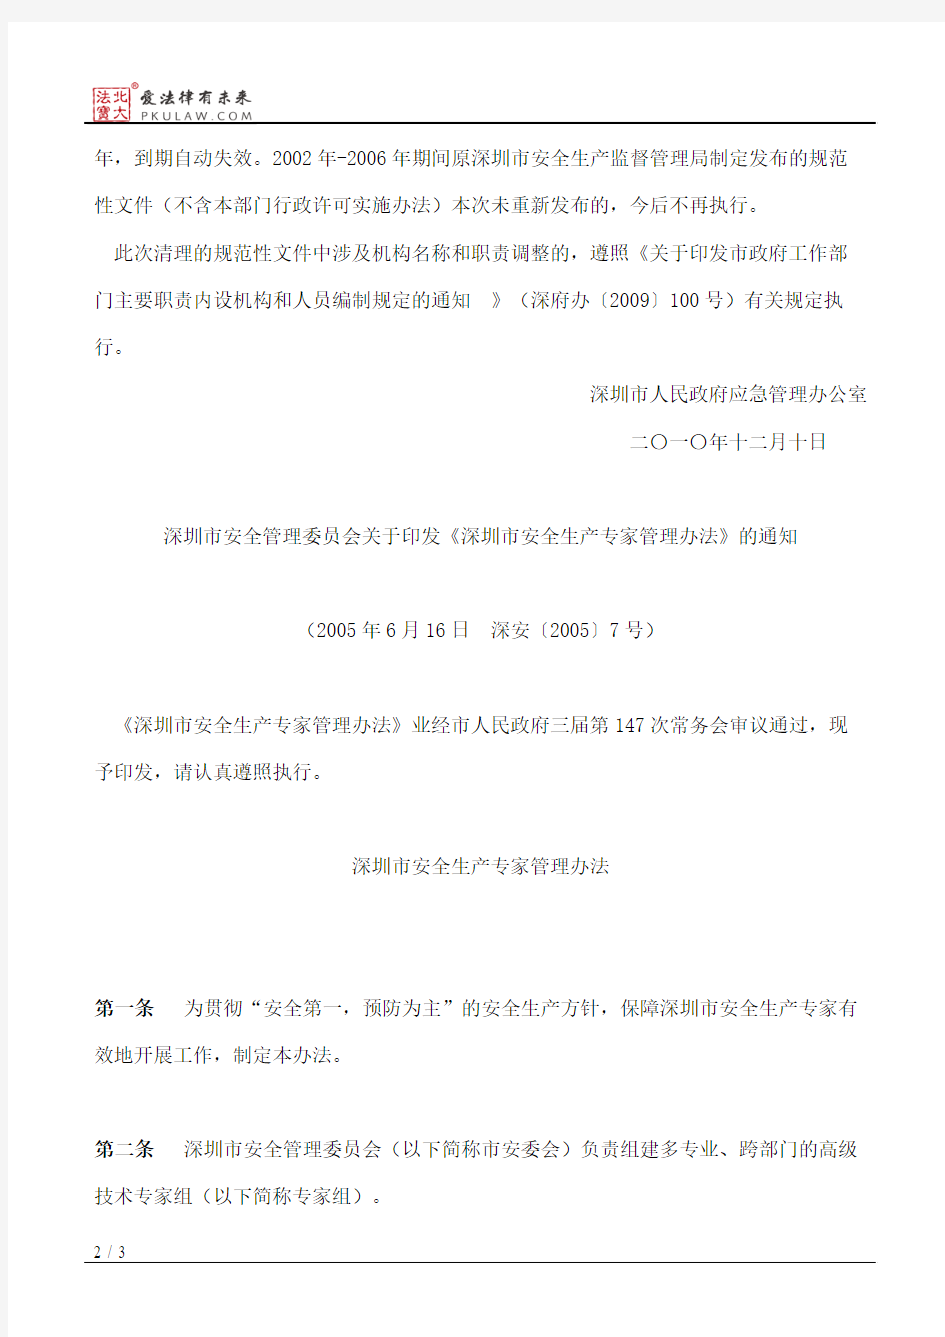 深圳市人民政府应急管理办公室关于重新发布《深圳市安全管理委员